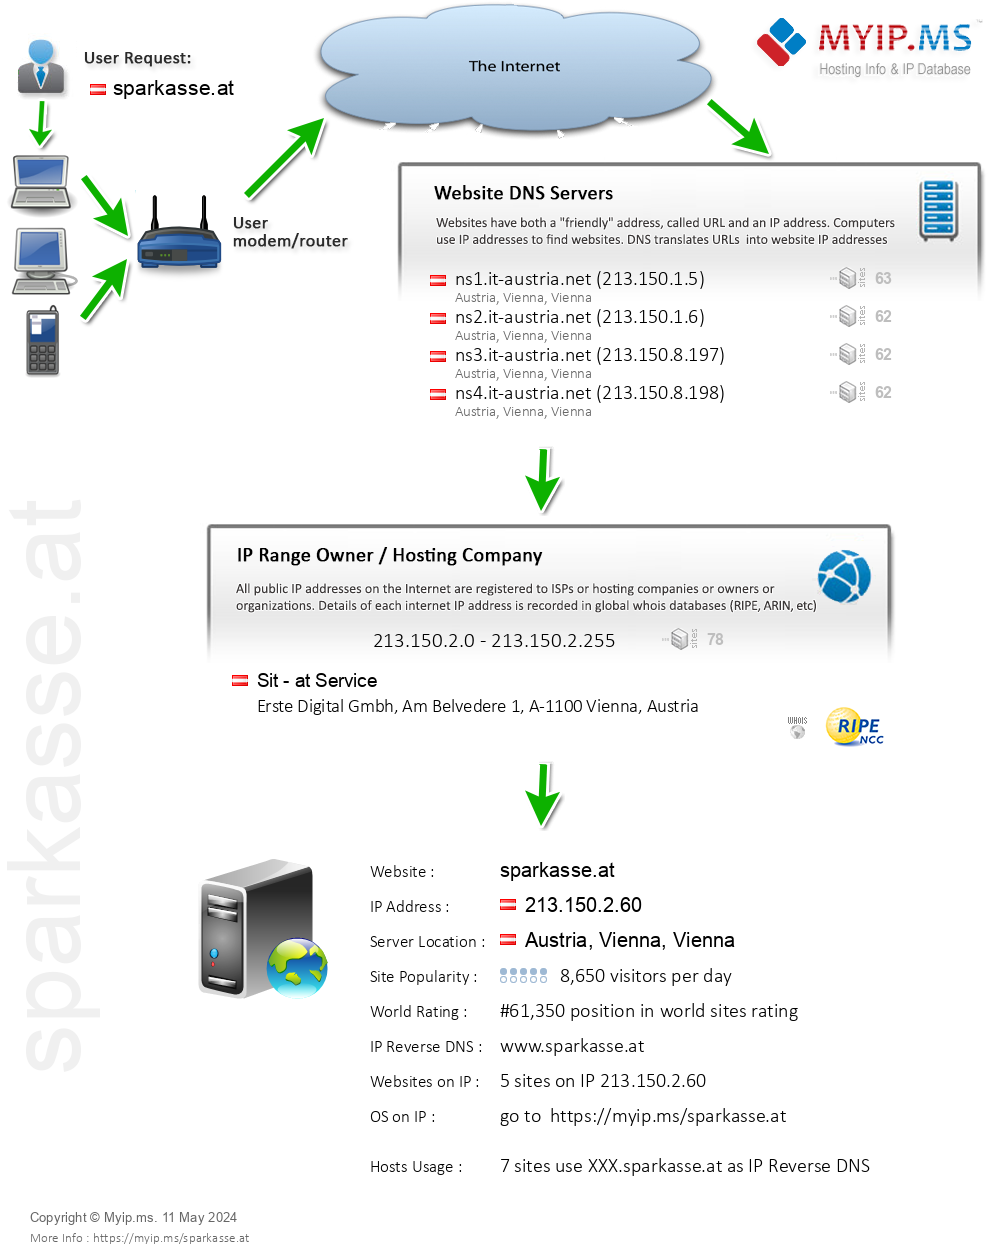 Sparkasse.at - Website Hosting Visual IP Diagram